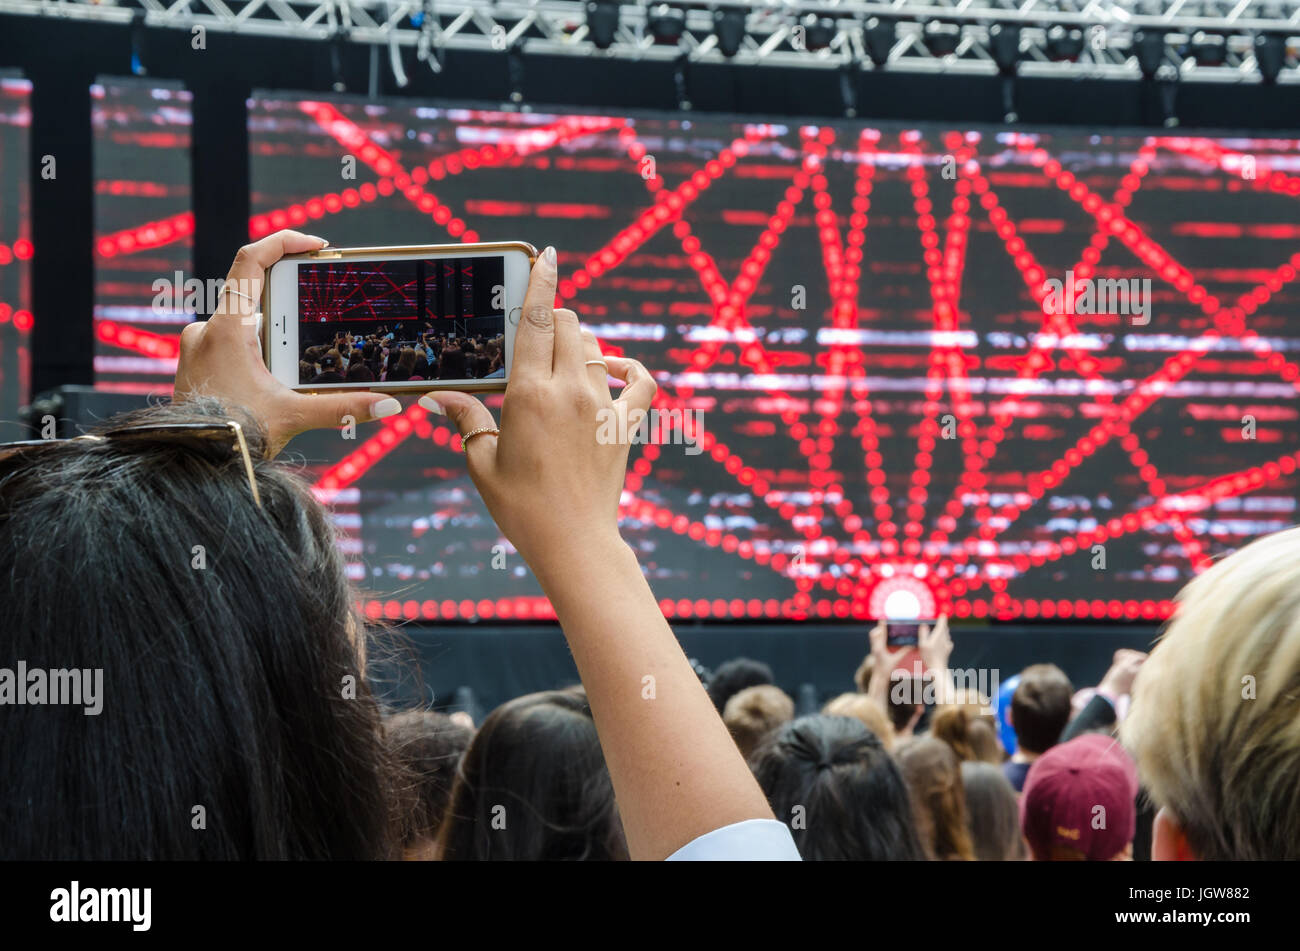 Le tournage et l'adherence photos de spectacle sur scène au London Festival coréen à l'aide d'un smartphone. Banque D'Images